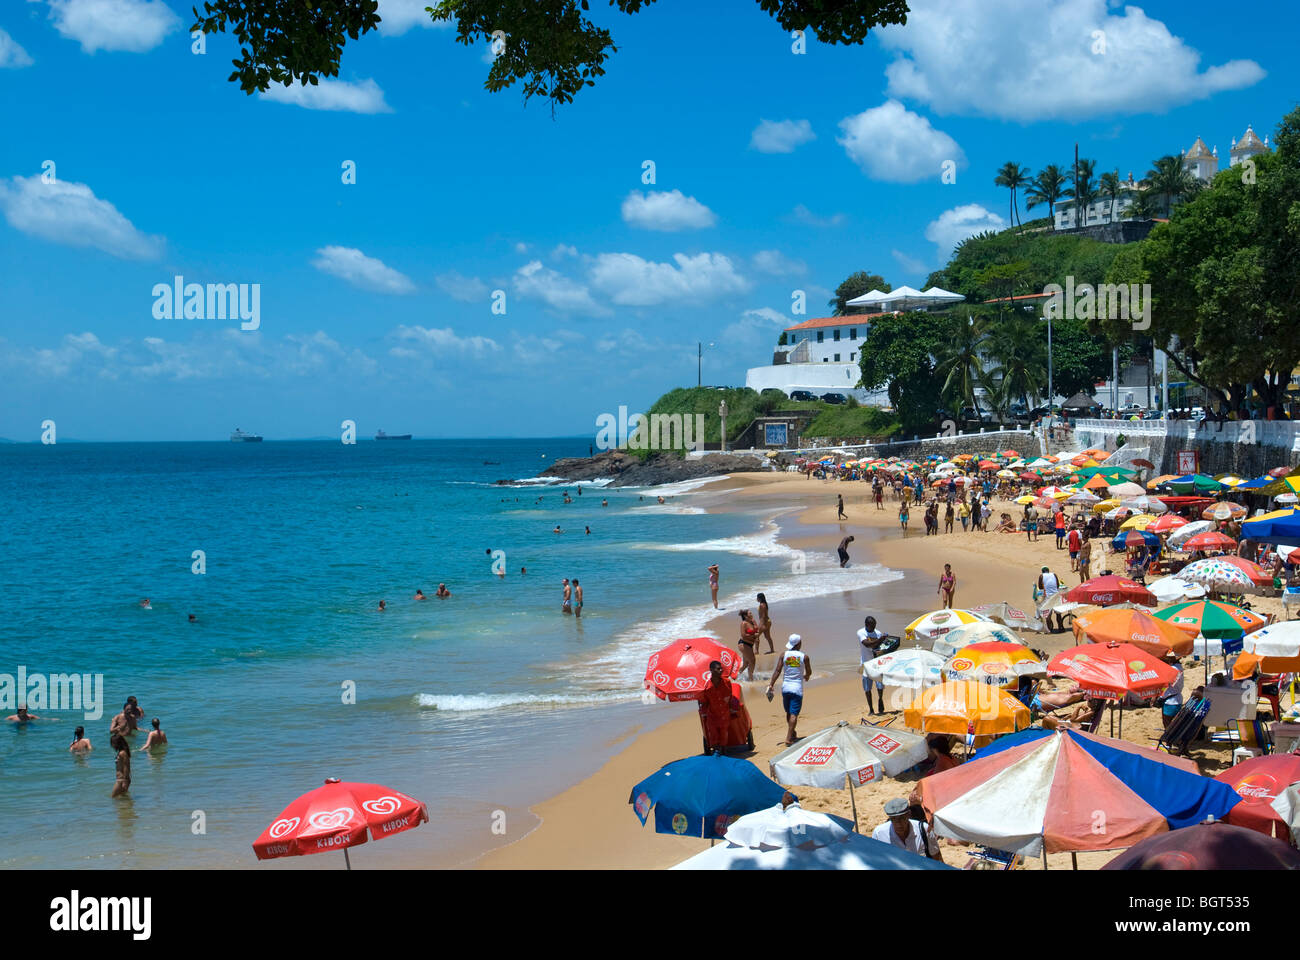 Porto da barra Beach, Salvador, Bahia, Brazil Stock Photo